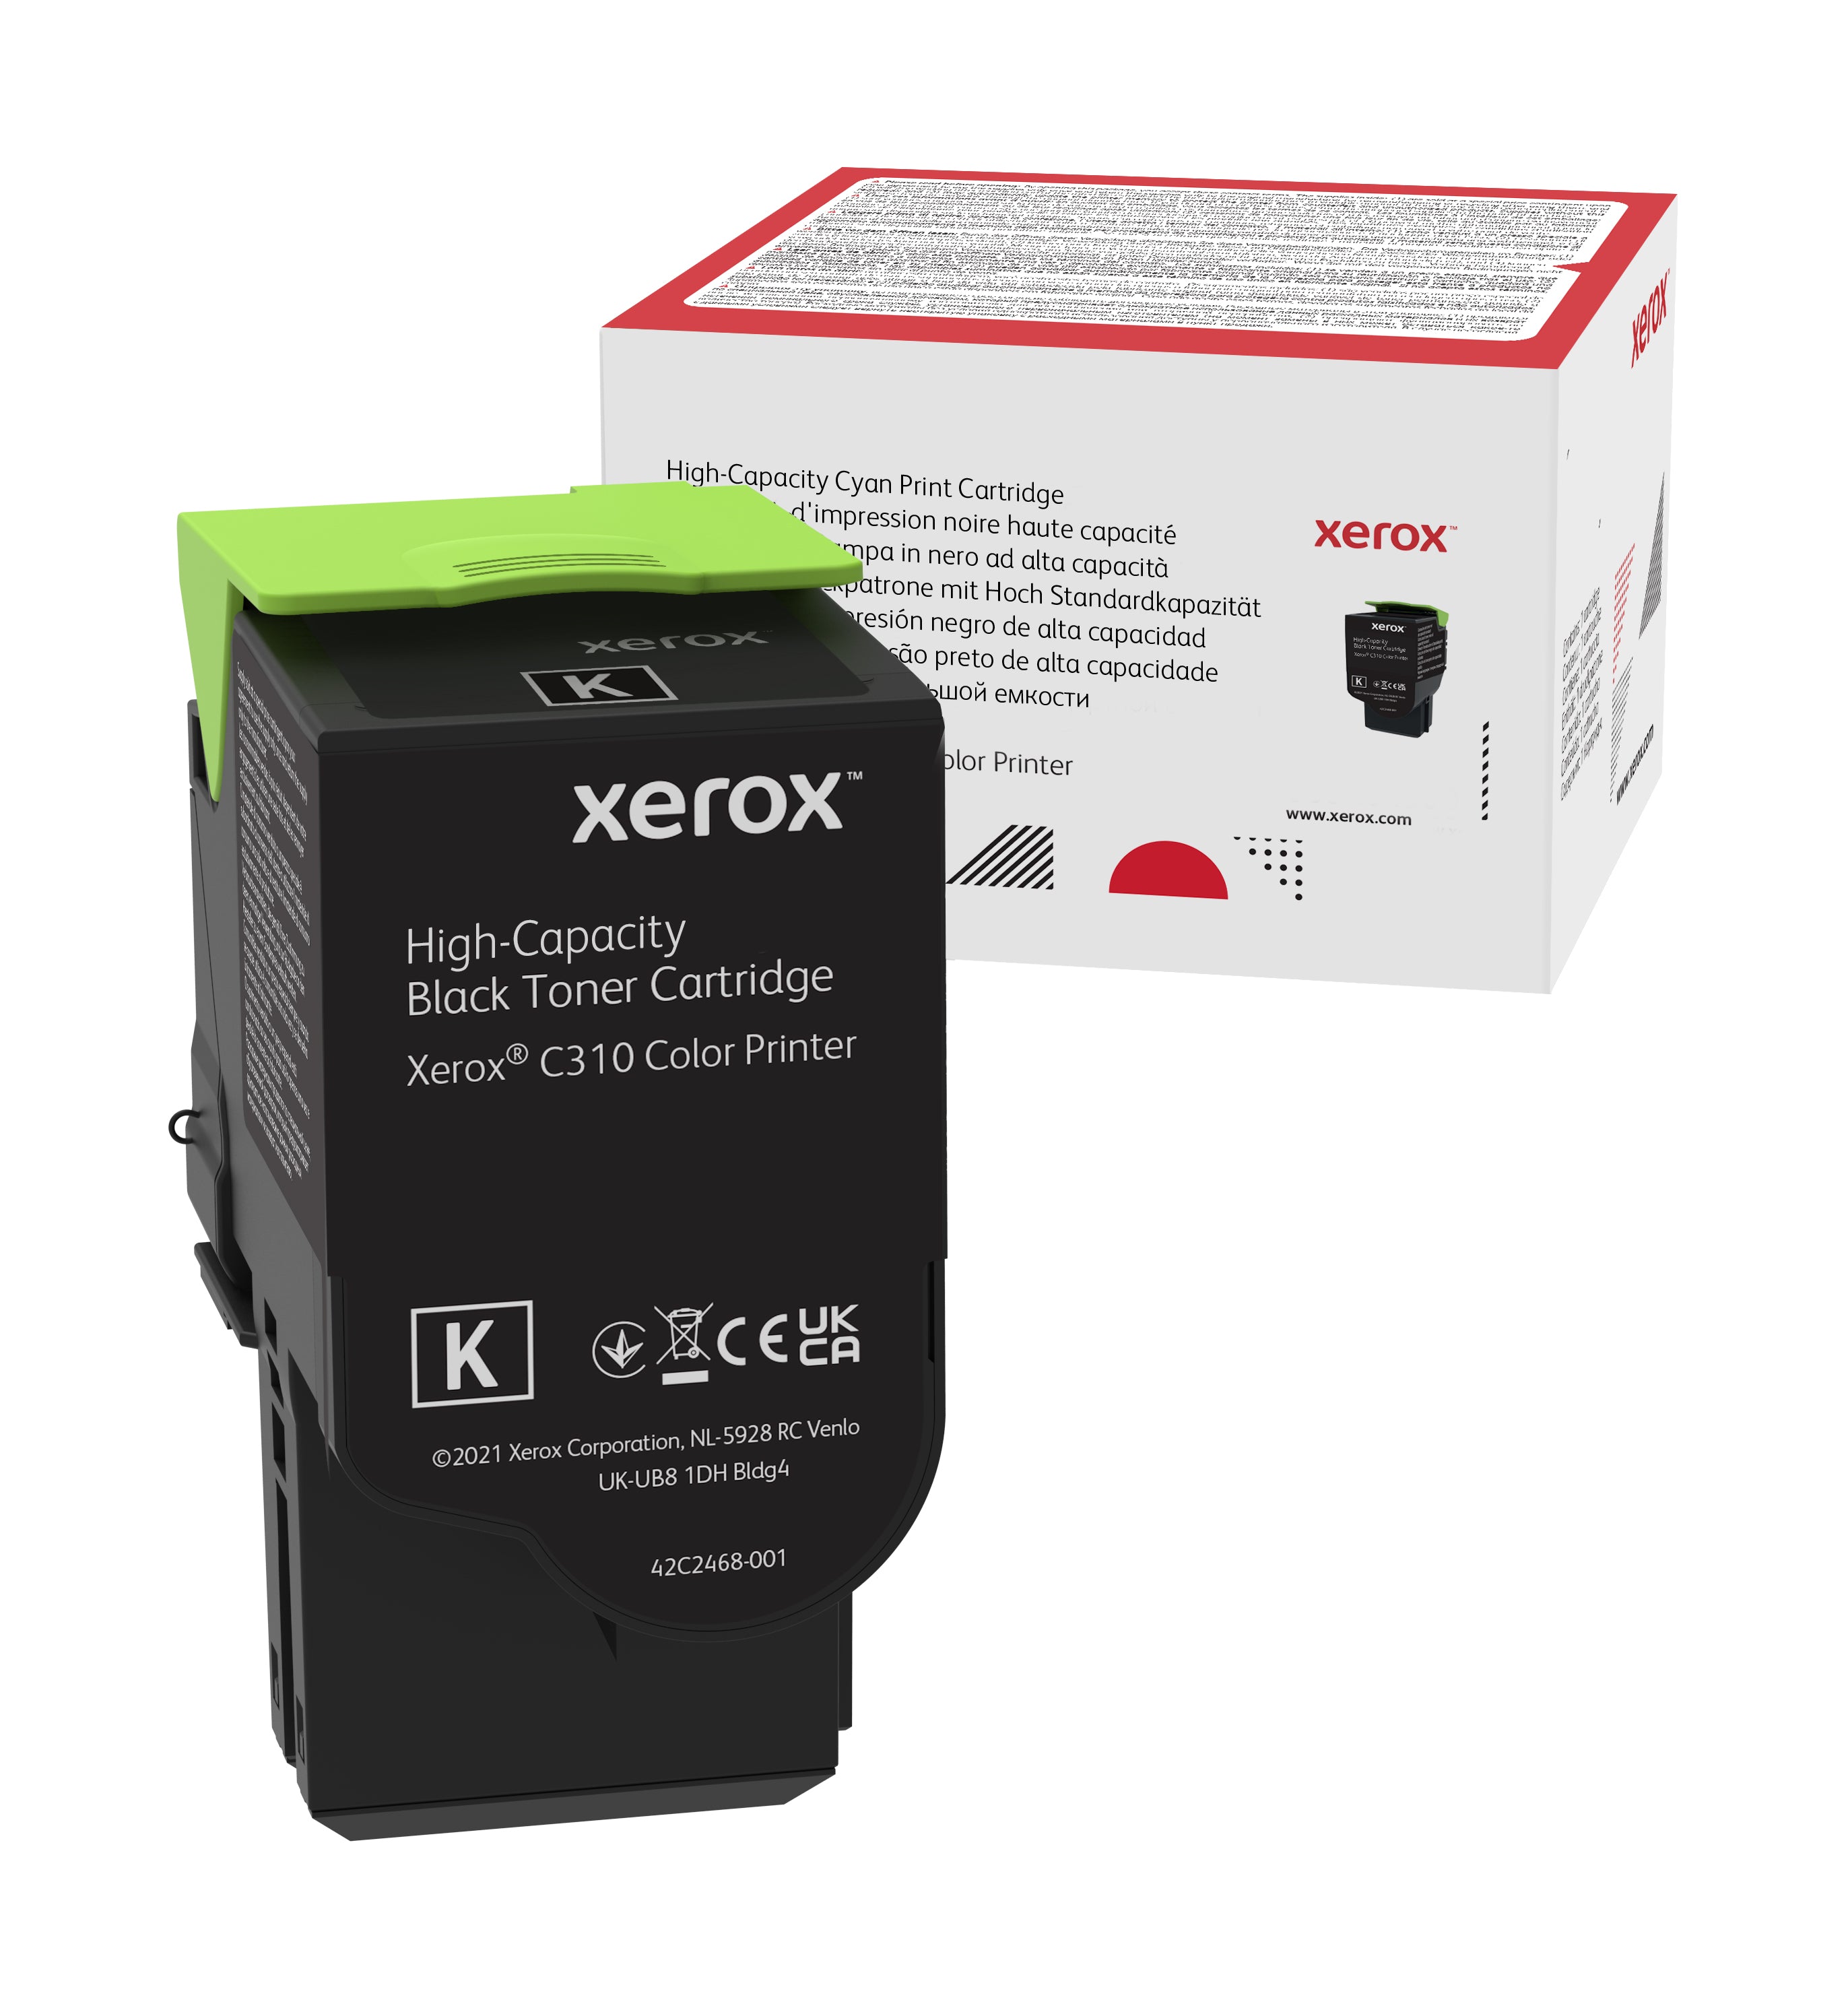 Absolute Toner Genuine Xerox 006R04364 High Capacity Black Toner Cartridge For C310/C315 Color Printer Original Xerox Cartridges